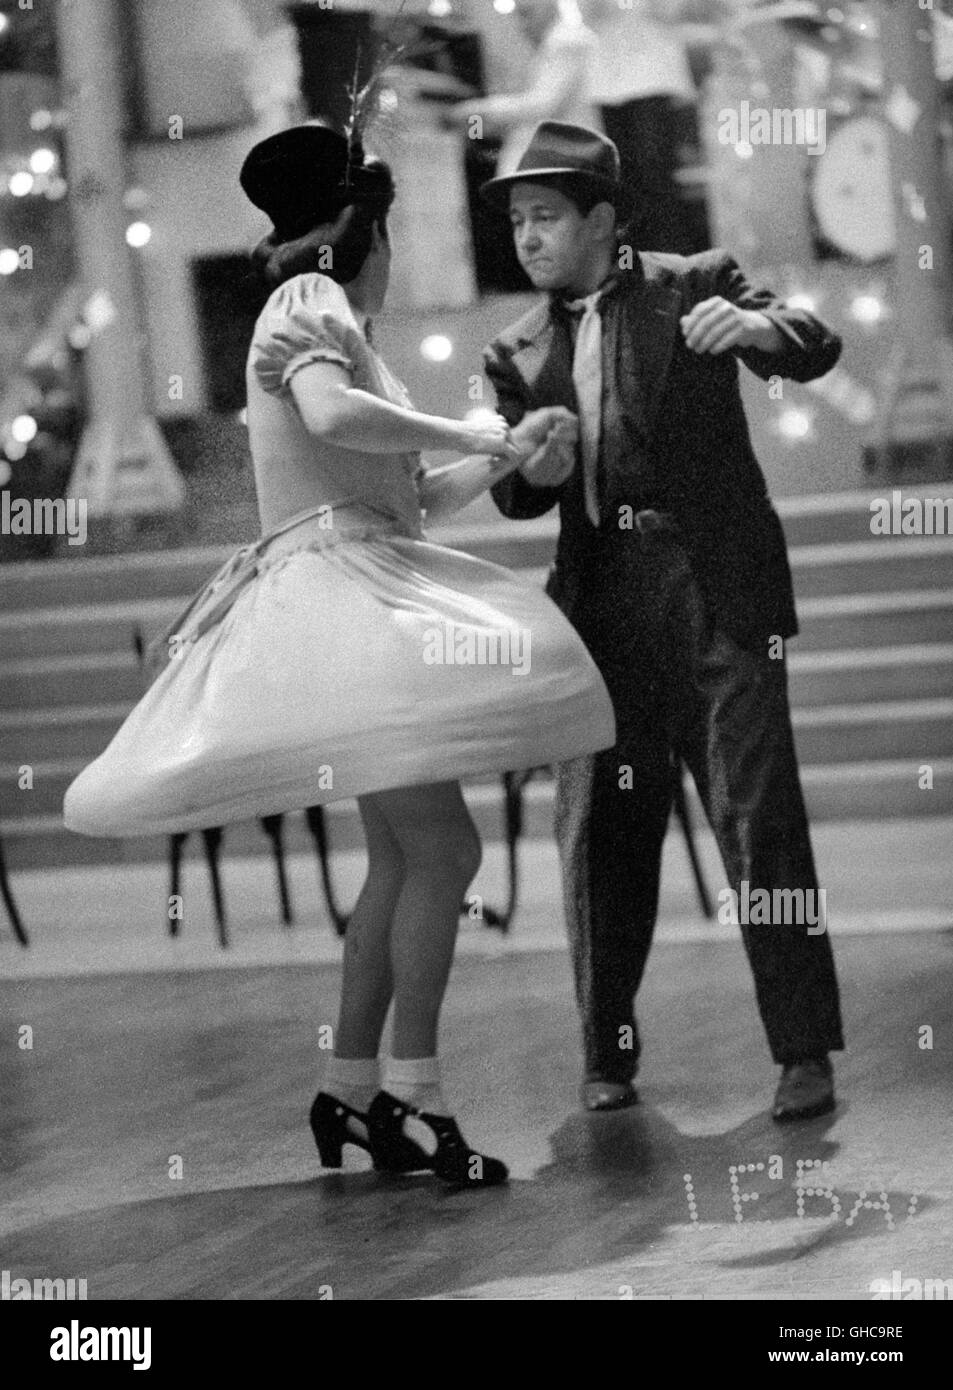 LE BAL italien Ettore Scola 1983 l'année 50 histoire d'une salle de bal en France, depuis les années 1930 - 1980. Image : 1956 - Rock'n' Roll dancing couple. Regie : Ettore Scola Banque D'Images